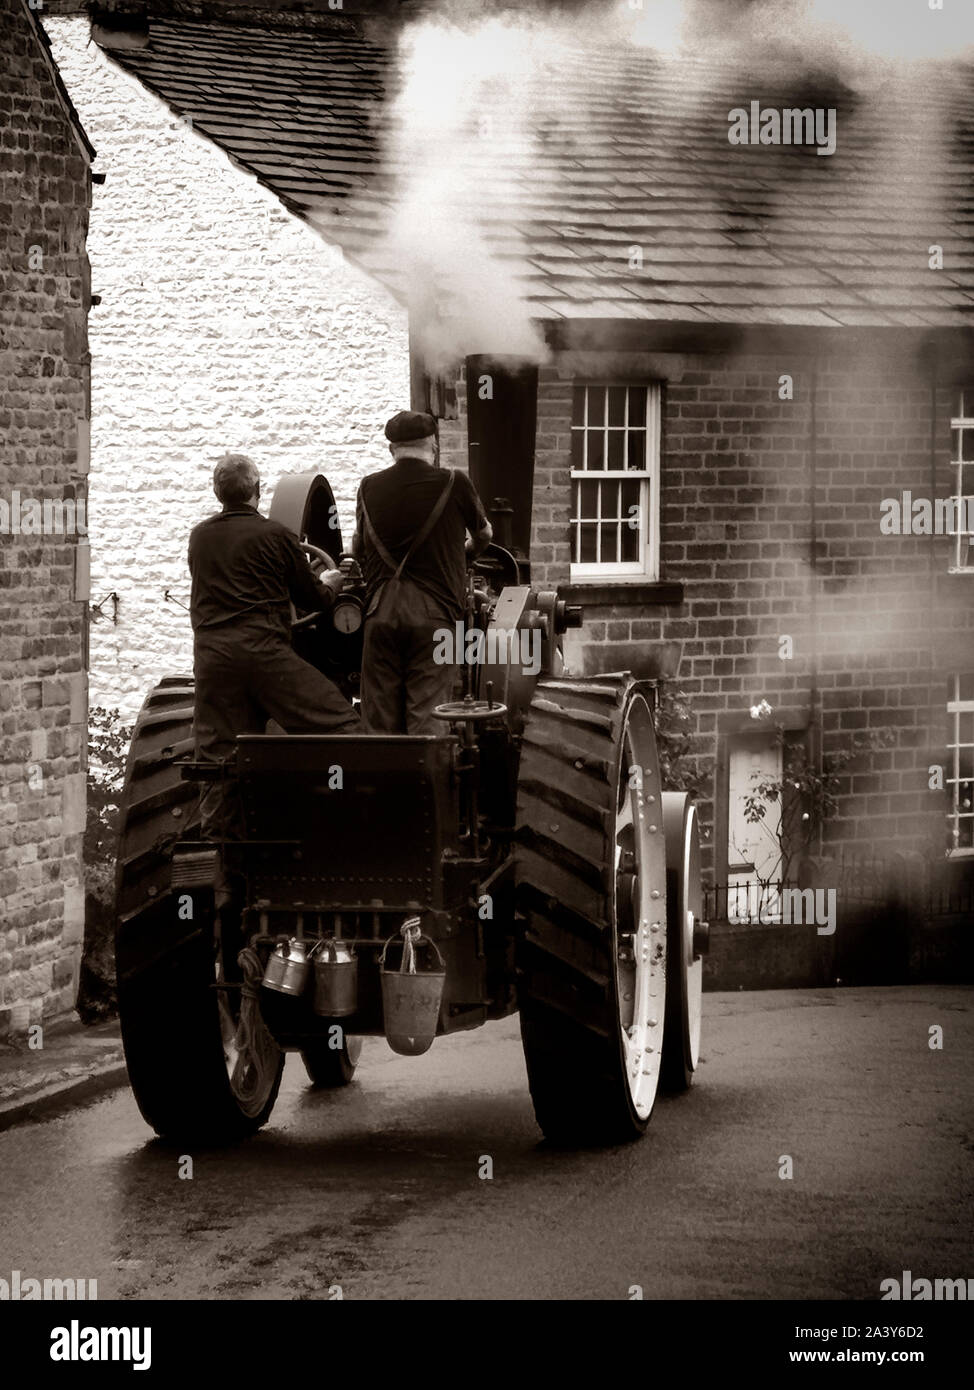 Jahrhundert Zugmaschine in dem kleinen Dorf Chinley, in Derbyshire, England Stockfoto